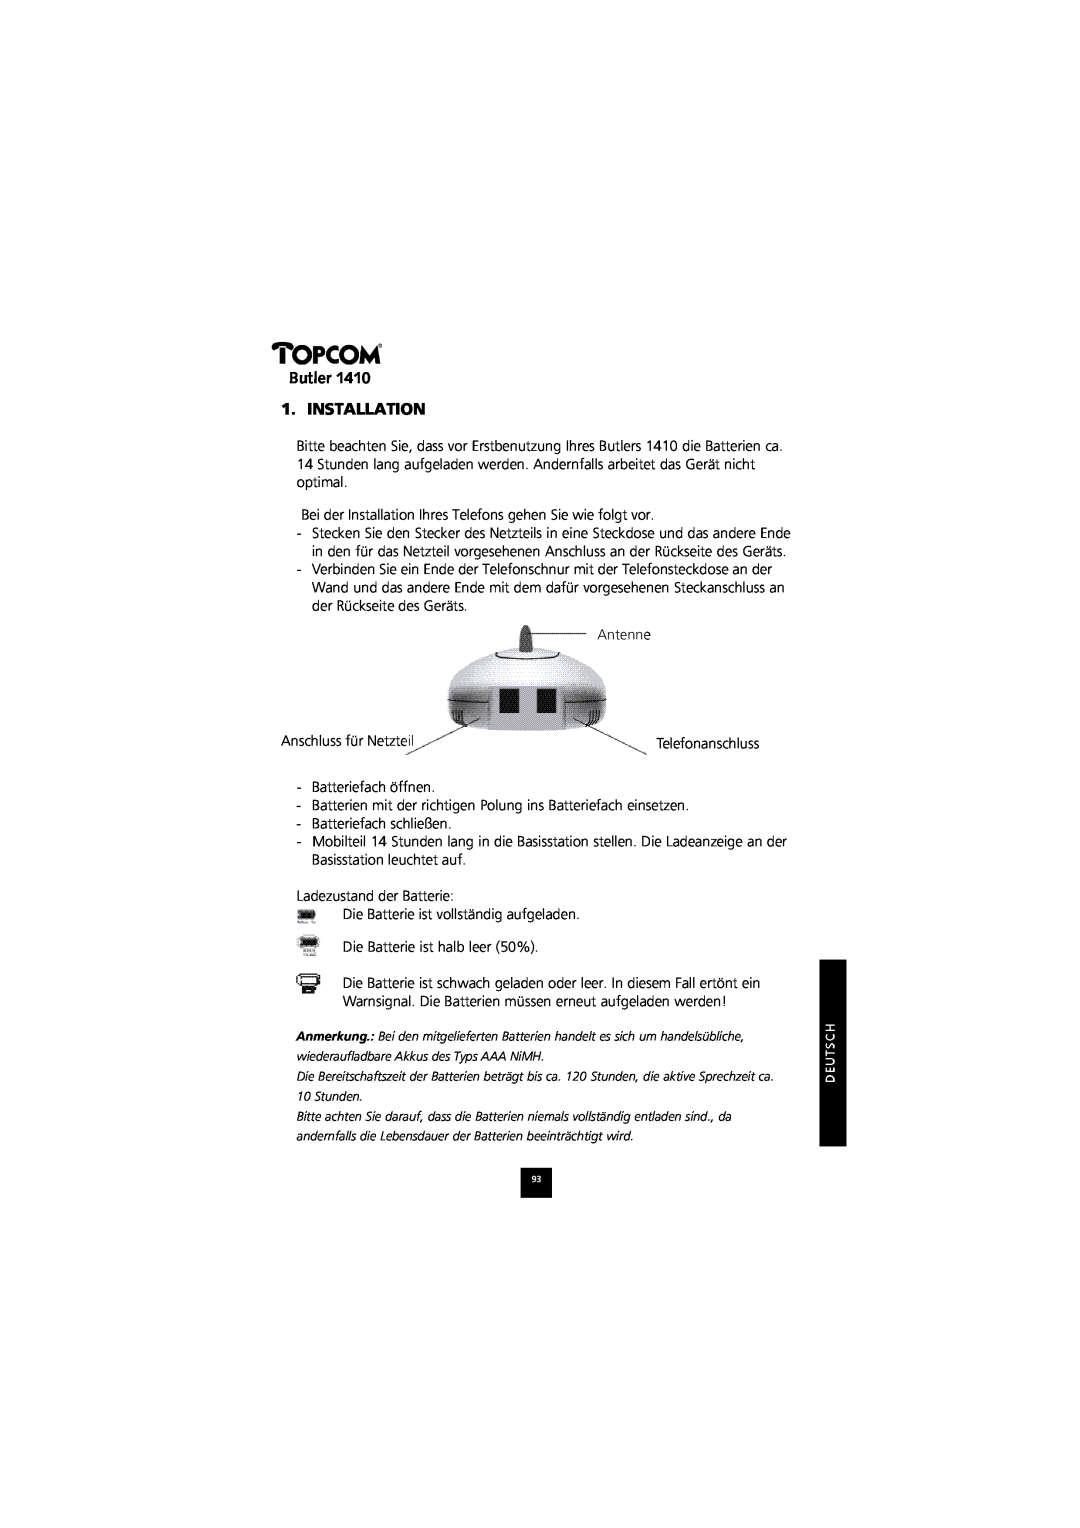 Topcom 1410 manual Butler 1. INSTALLATION, Telefonanschluss 